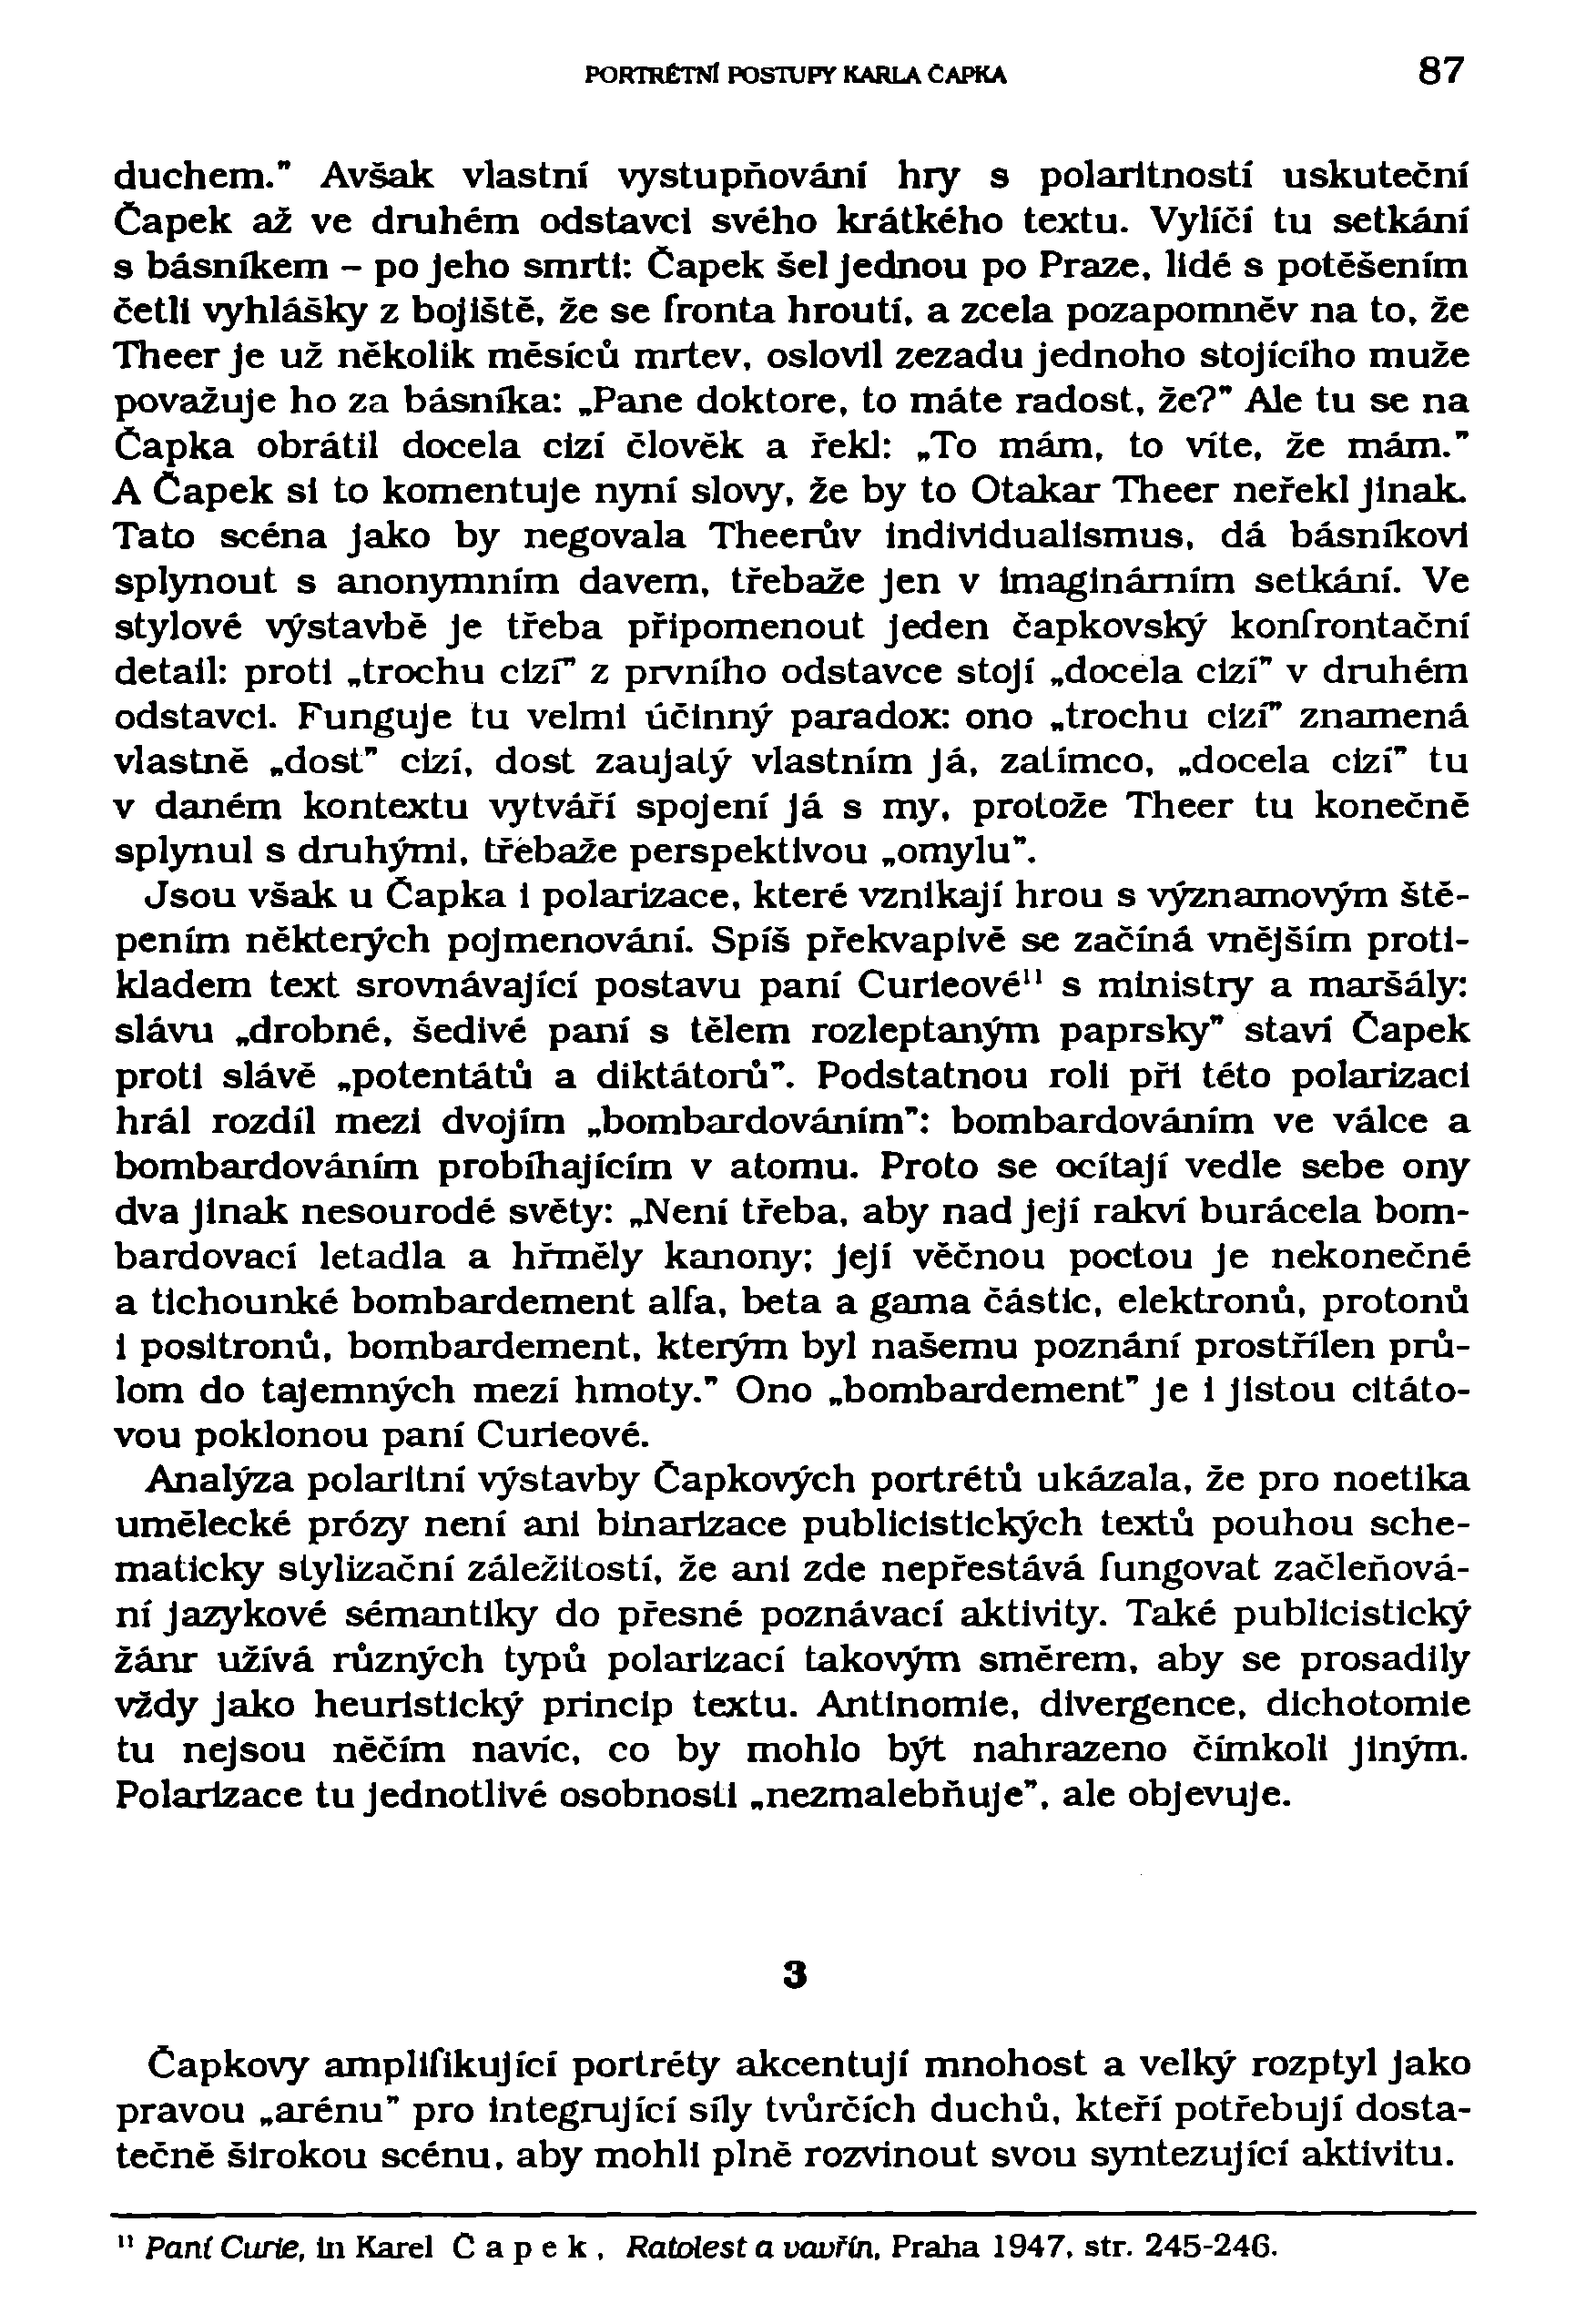 PORTRÉTNÍ POSTUPY KARLA ČAPKA - PDF Stažení zdarma